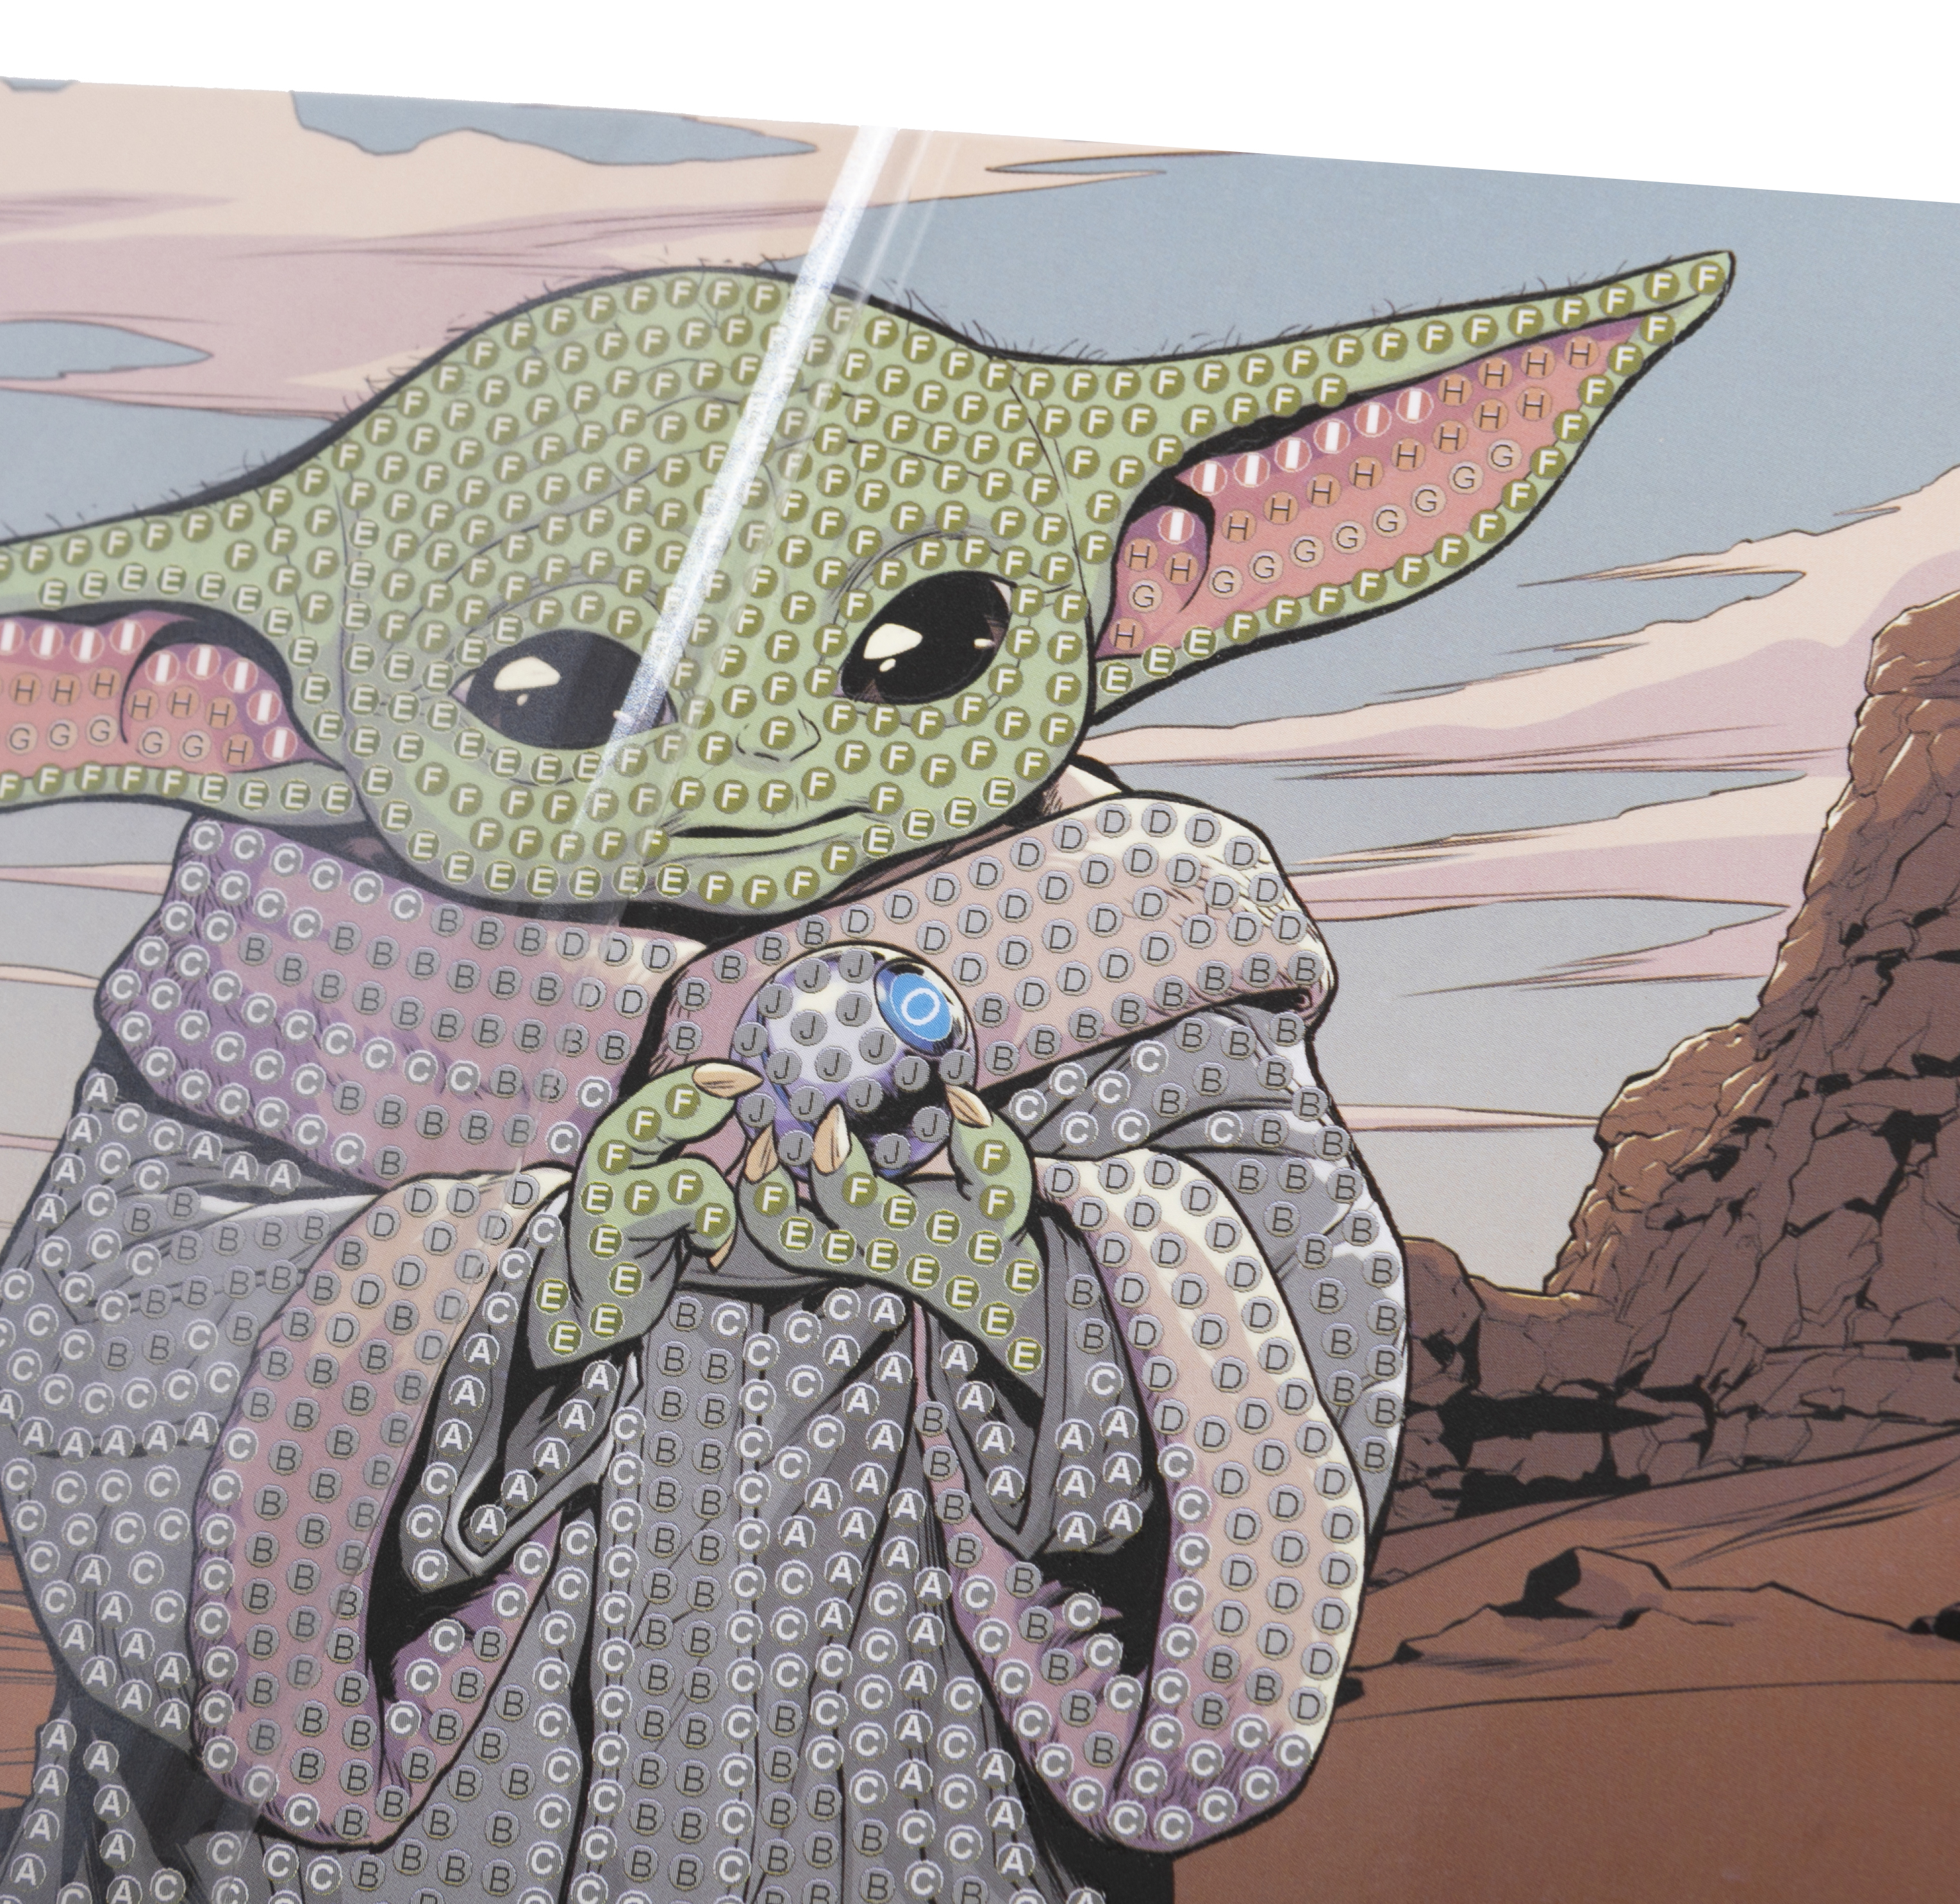 Pohľadnica Baby Yoda Star Wars vykladanie z diamantov